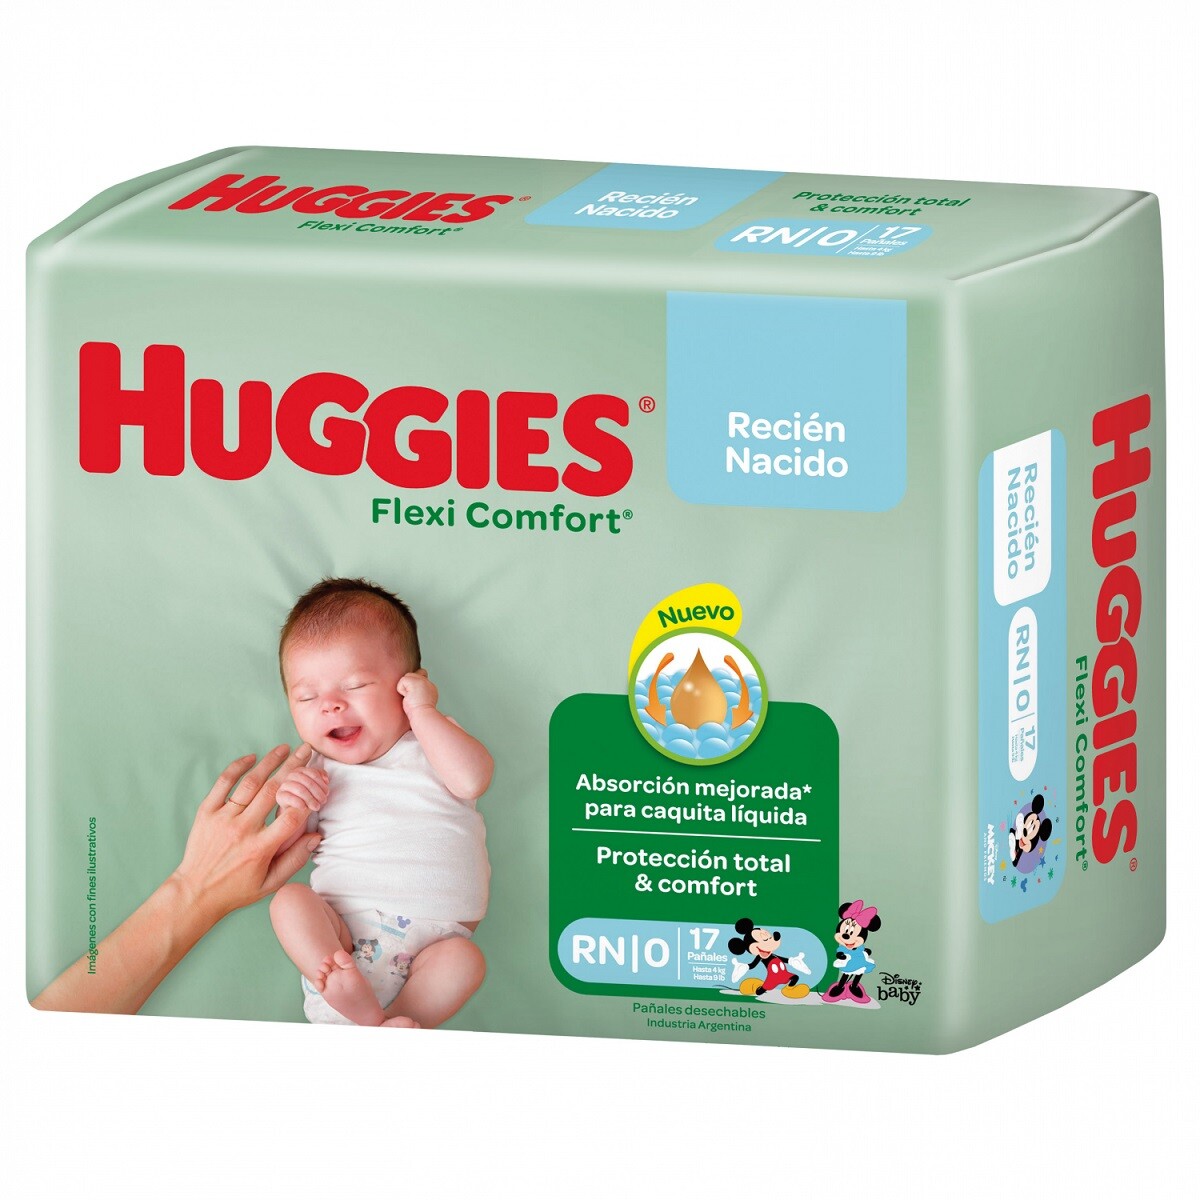 Pañales Huggies Flexi Comfort Recién Nacido 17 Uds. 